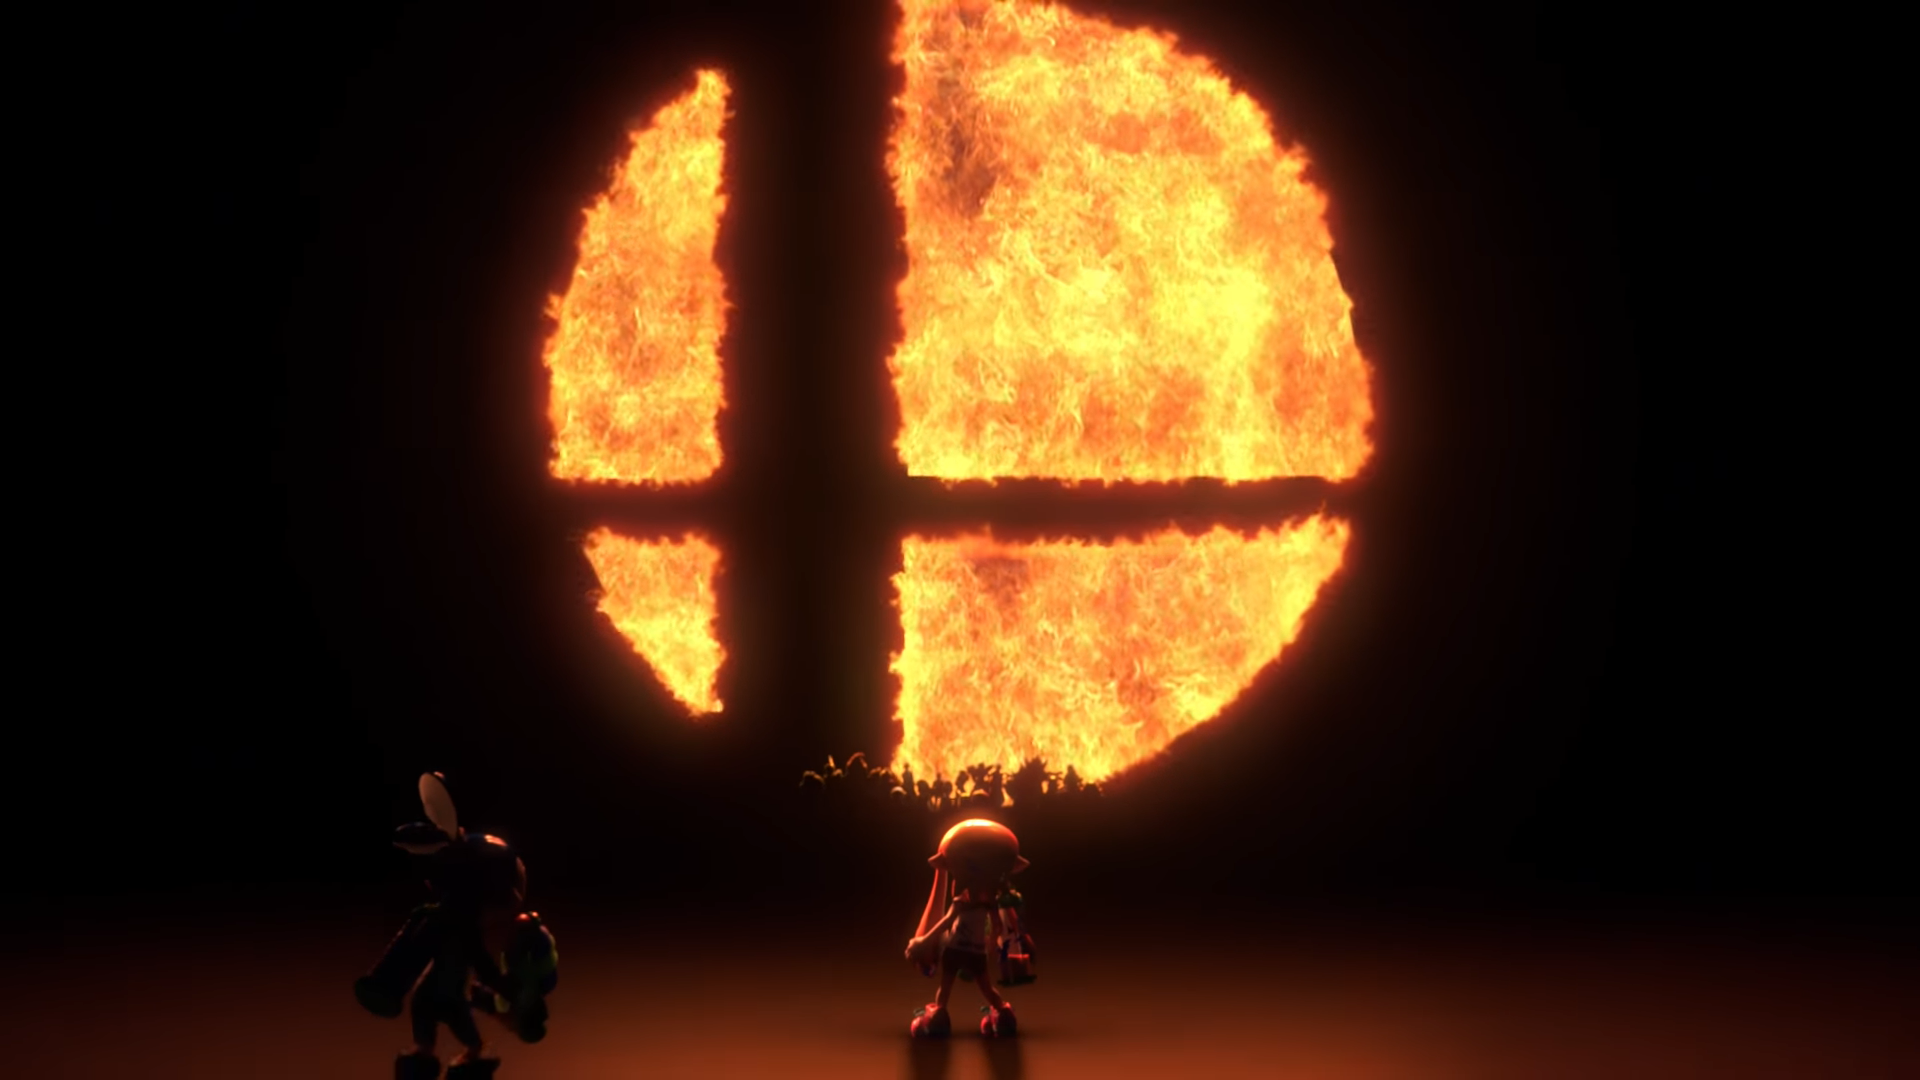 Boka en biljett för att spela Super Smash Bros. på E3 2018